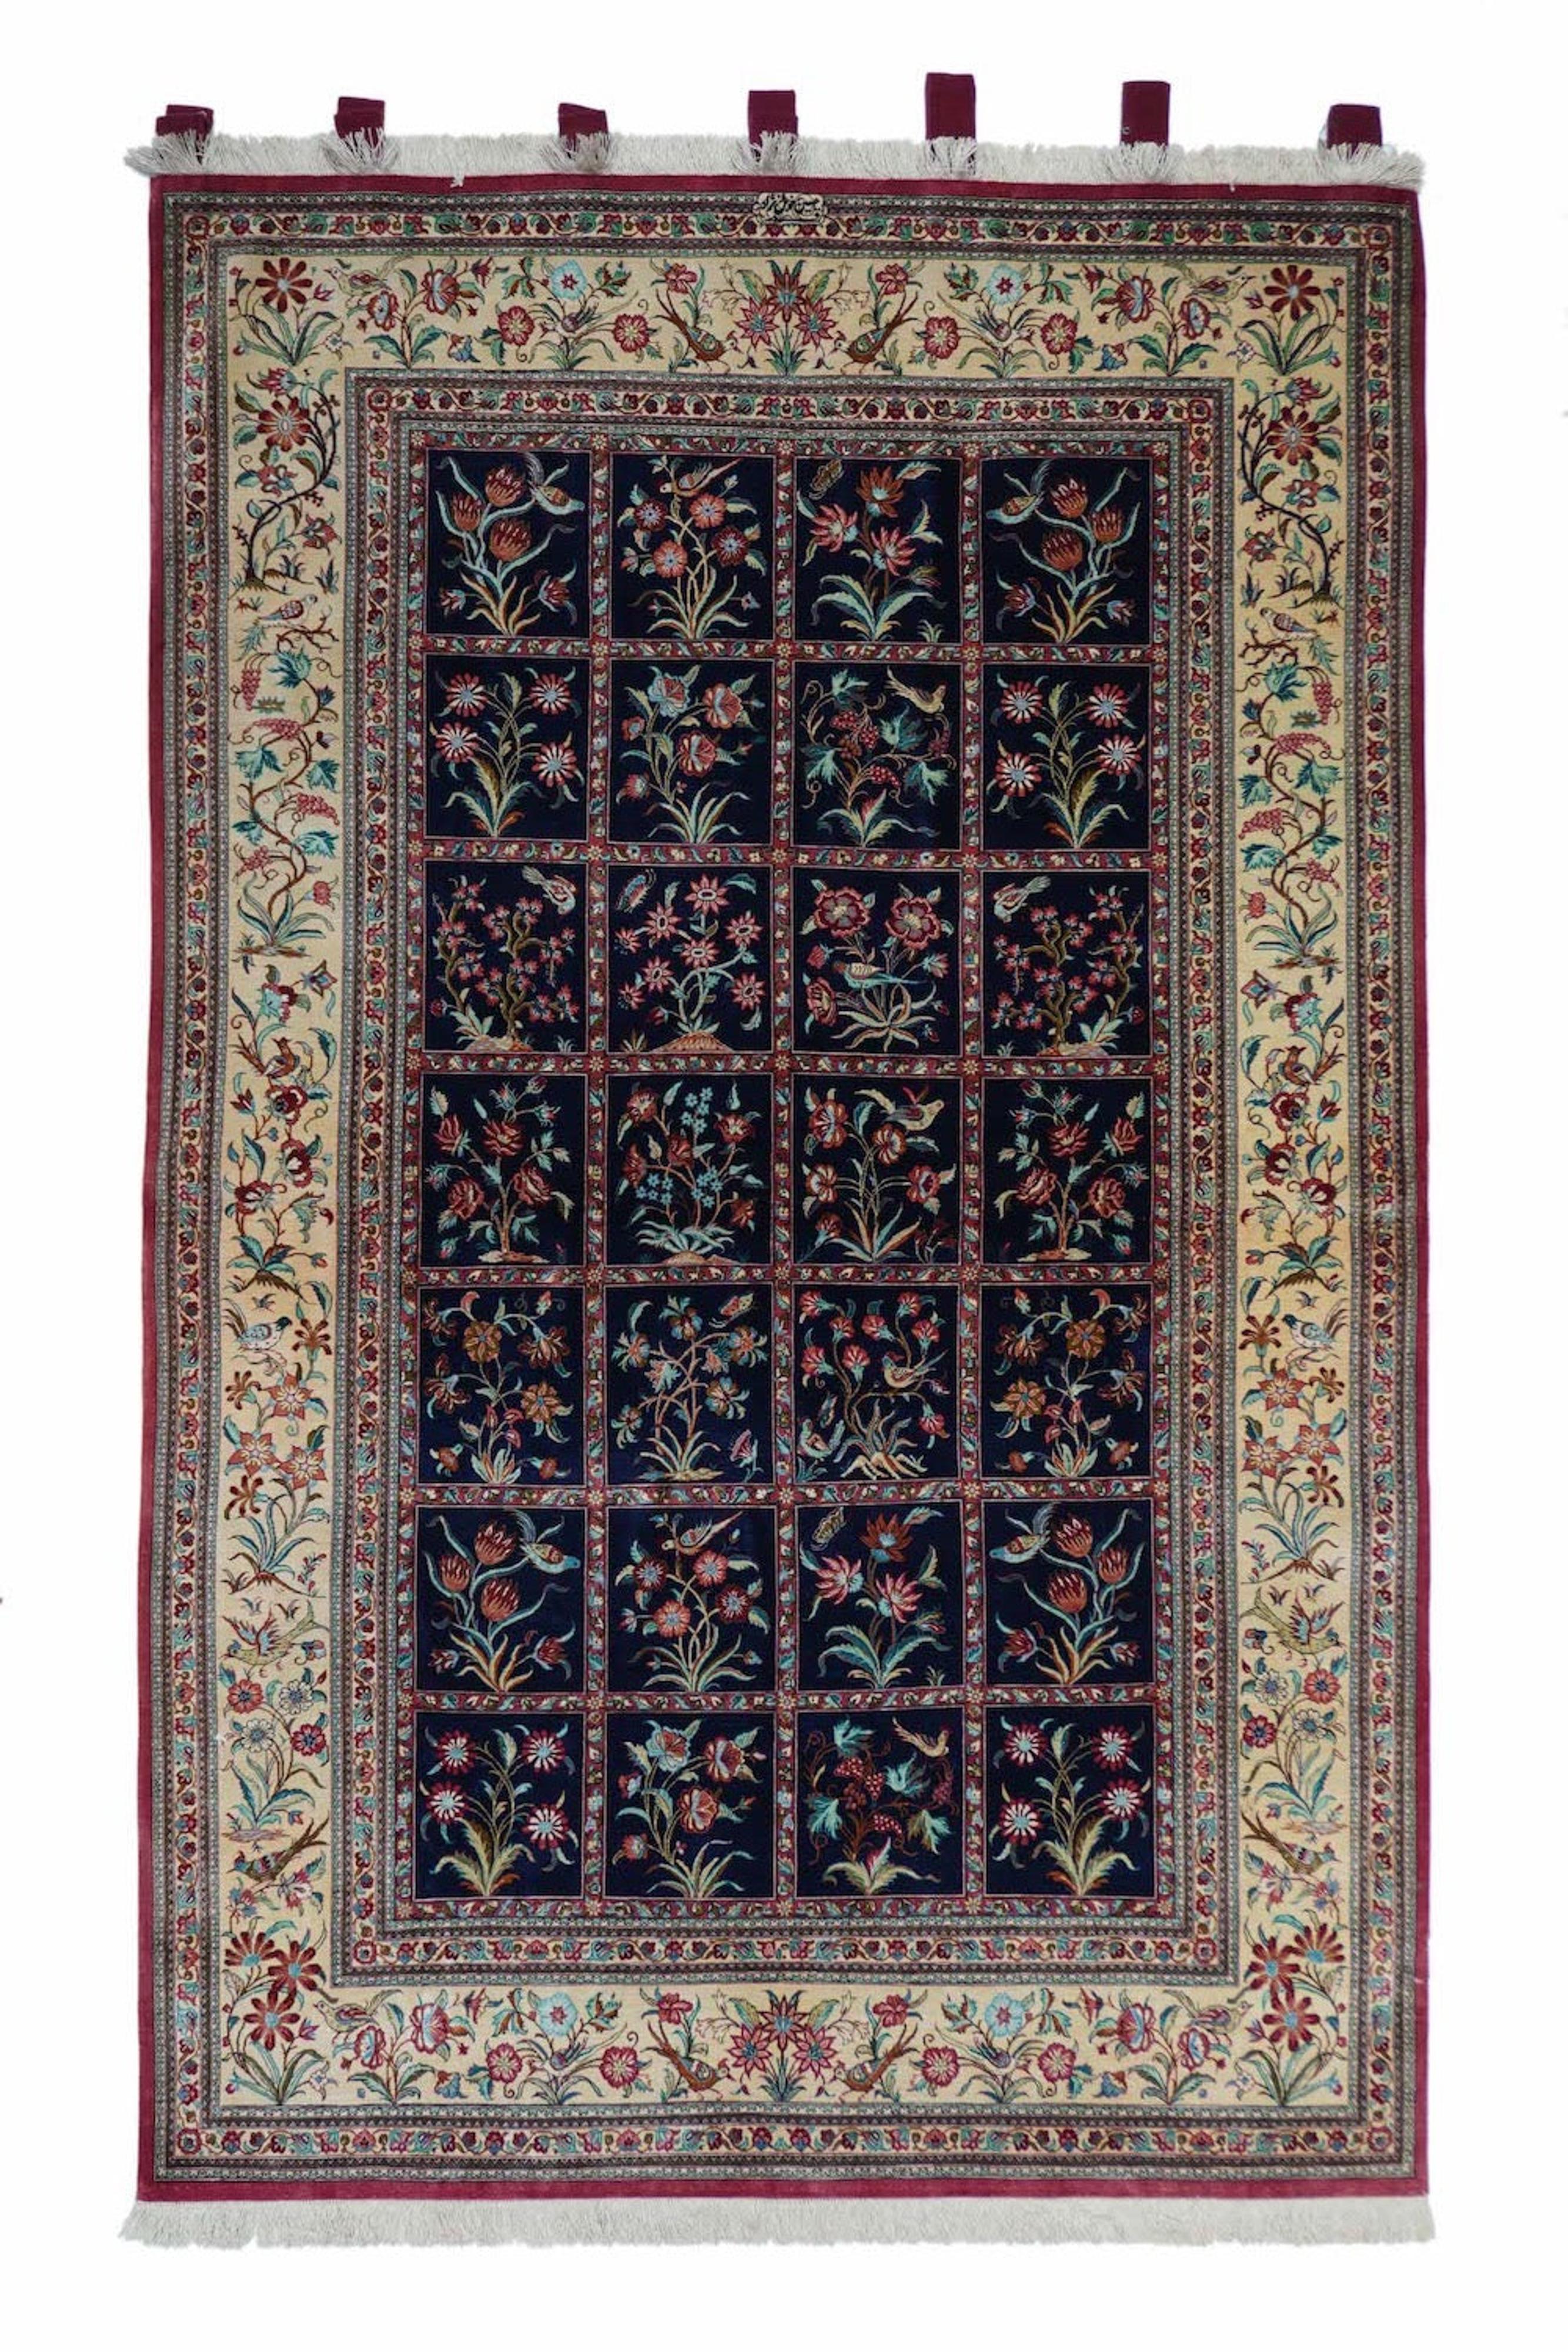 Qom-Teppiche (oder Qum, Ghom, Ghum) werden in der Provinz Qom im Iran, etwa 100 km südlich von Teheran, hergestellt. Obwohl die Teppichweberei in Qom erst in den letzten 100 Jahren zu einem bedeutenden Wirtschaftszweig wurde, sind die luxuriösen